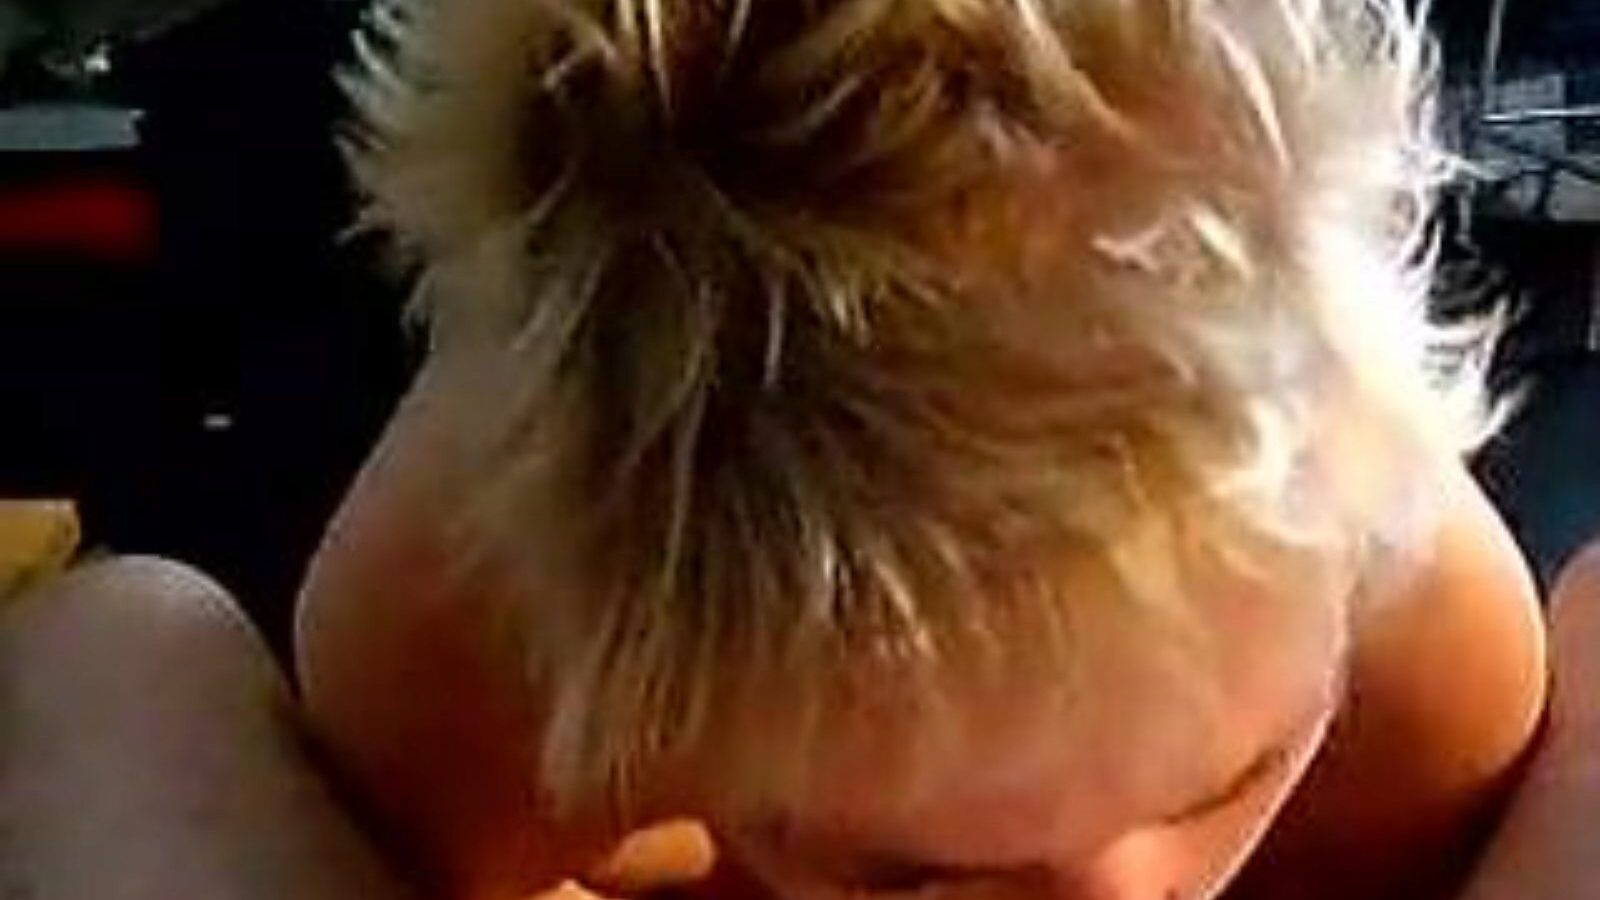 leuke dame: hemmagjord & gammal tjej porrvideo a6 - xhamster titta på leuke dame tube fuckfest film gratis på xhamster, med den hetaste samlingen av holländska hemlagad, gammal tjej och sugande pornografiska klippspel